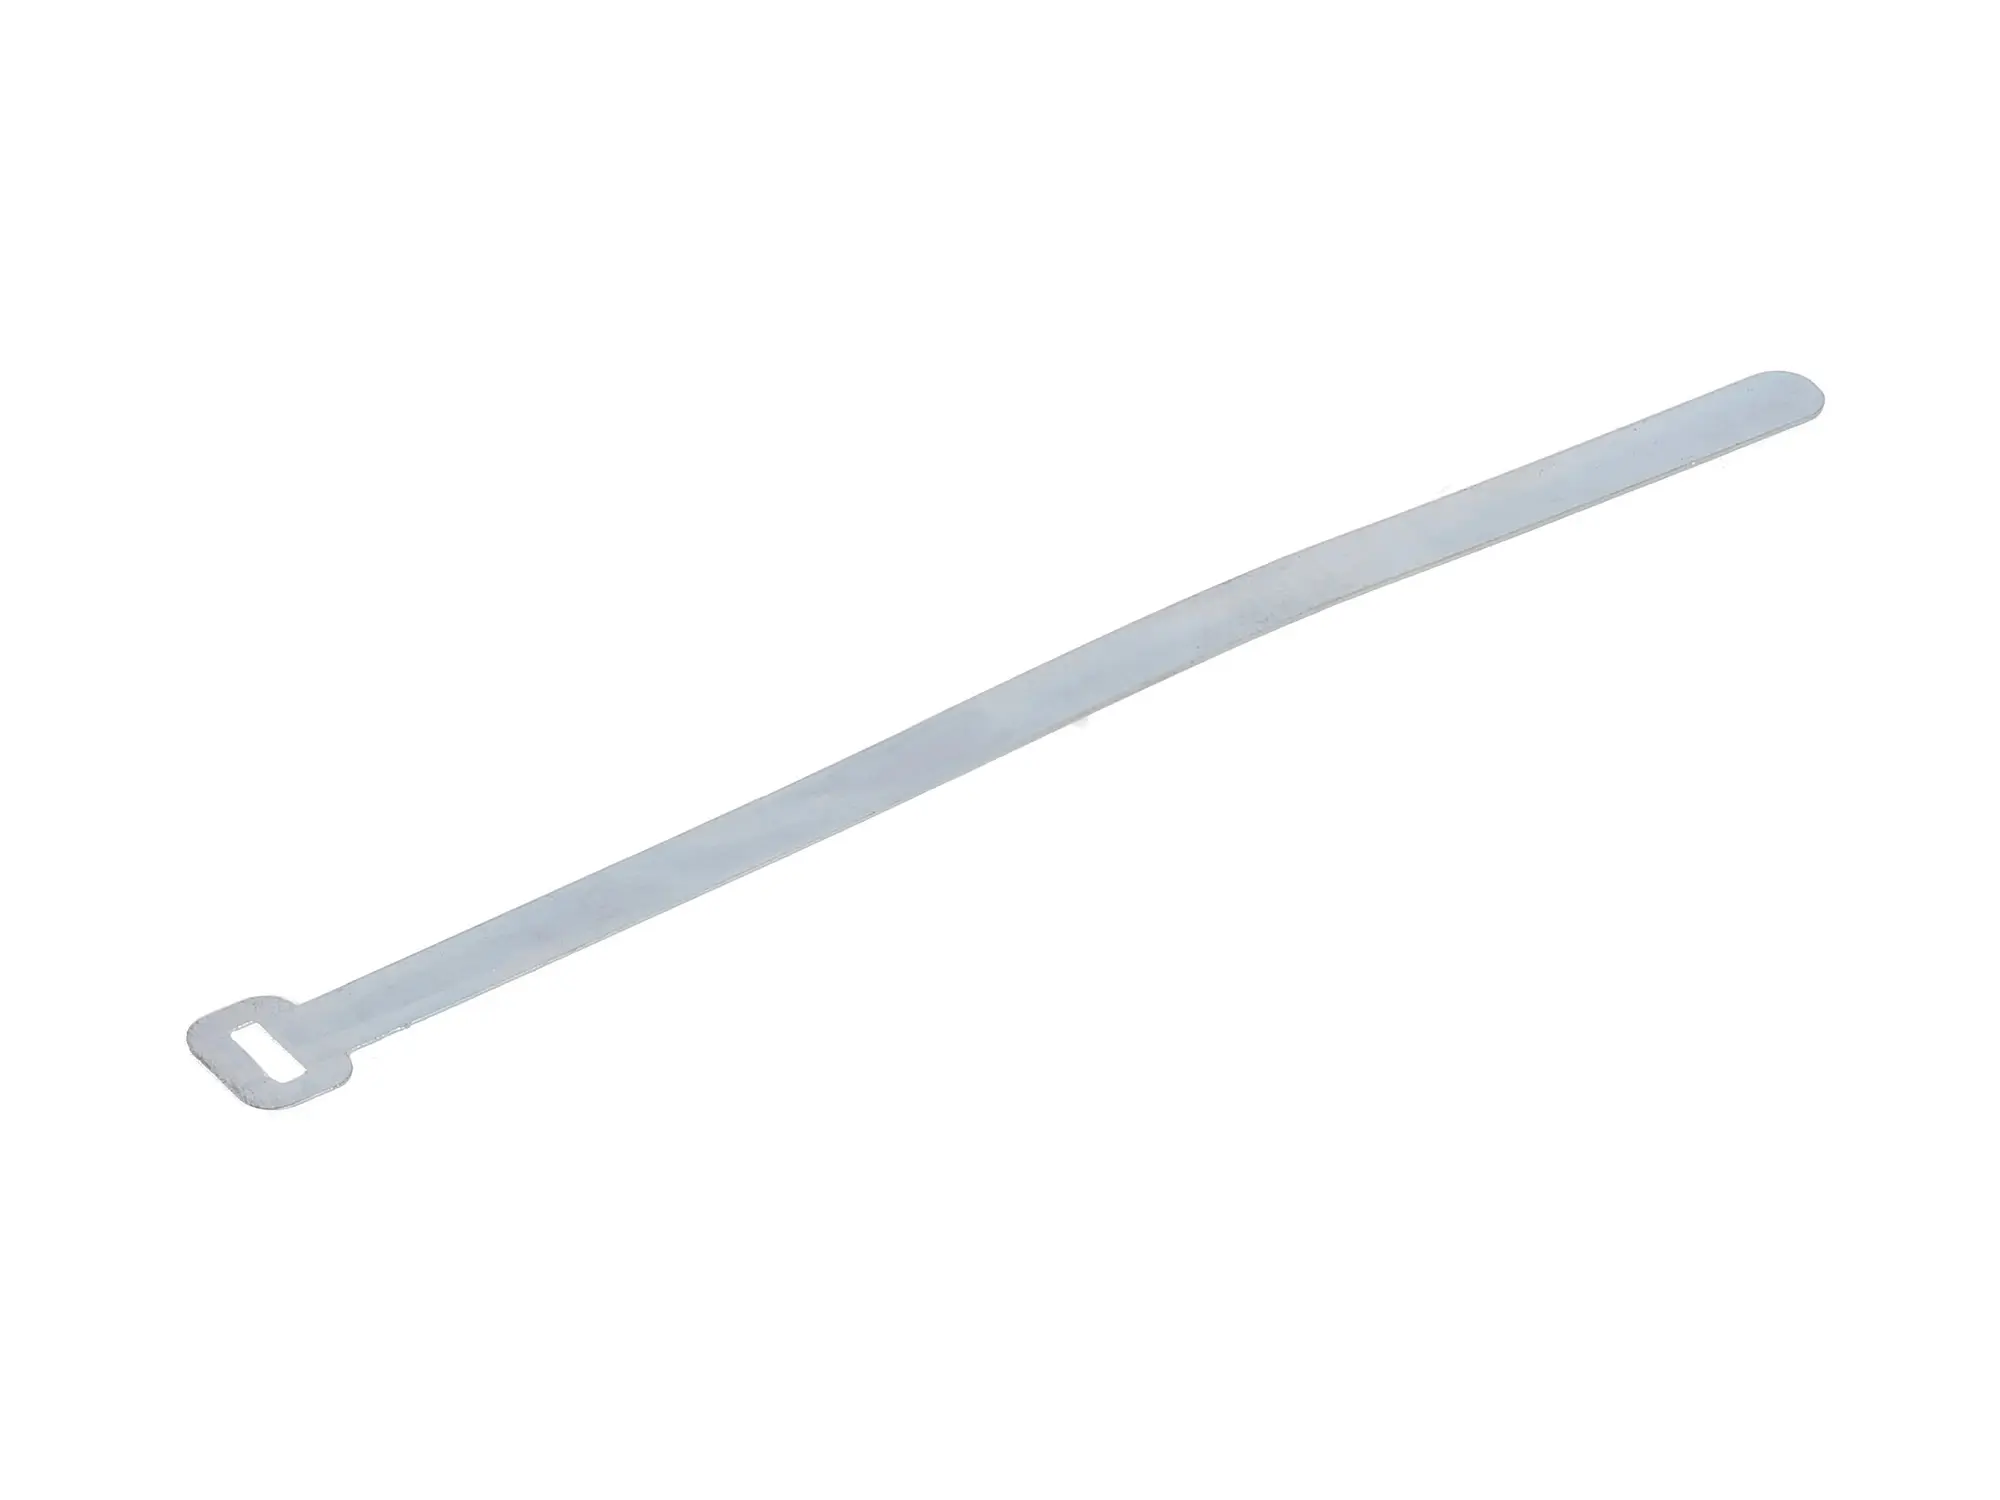 Kabelbinder Blech verzinkt 114mm lang, 6mm breit, 0,5mm dick, Art.-Nr.: 10066987 - Bild 1